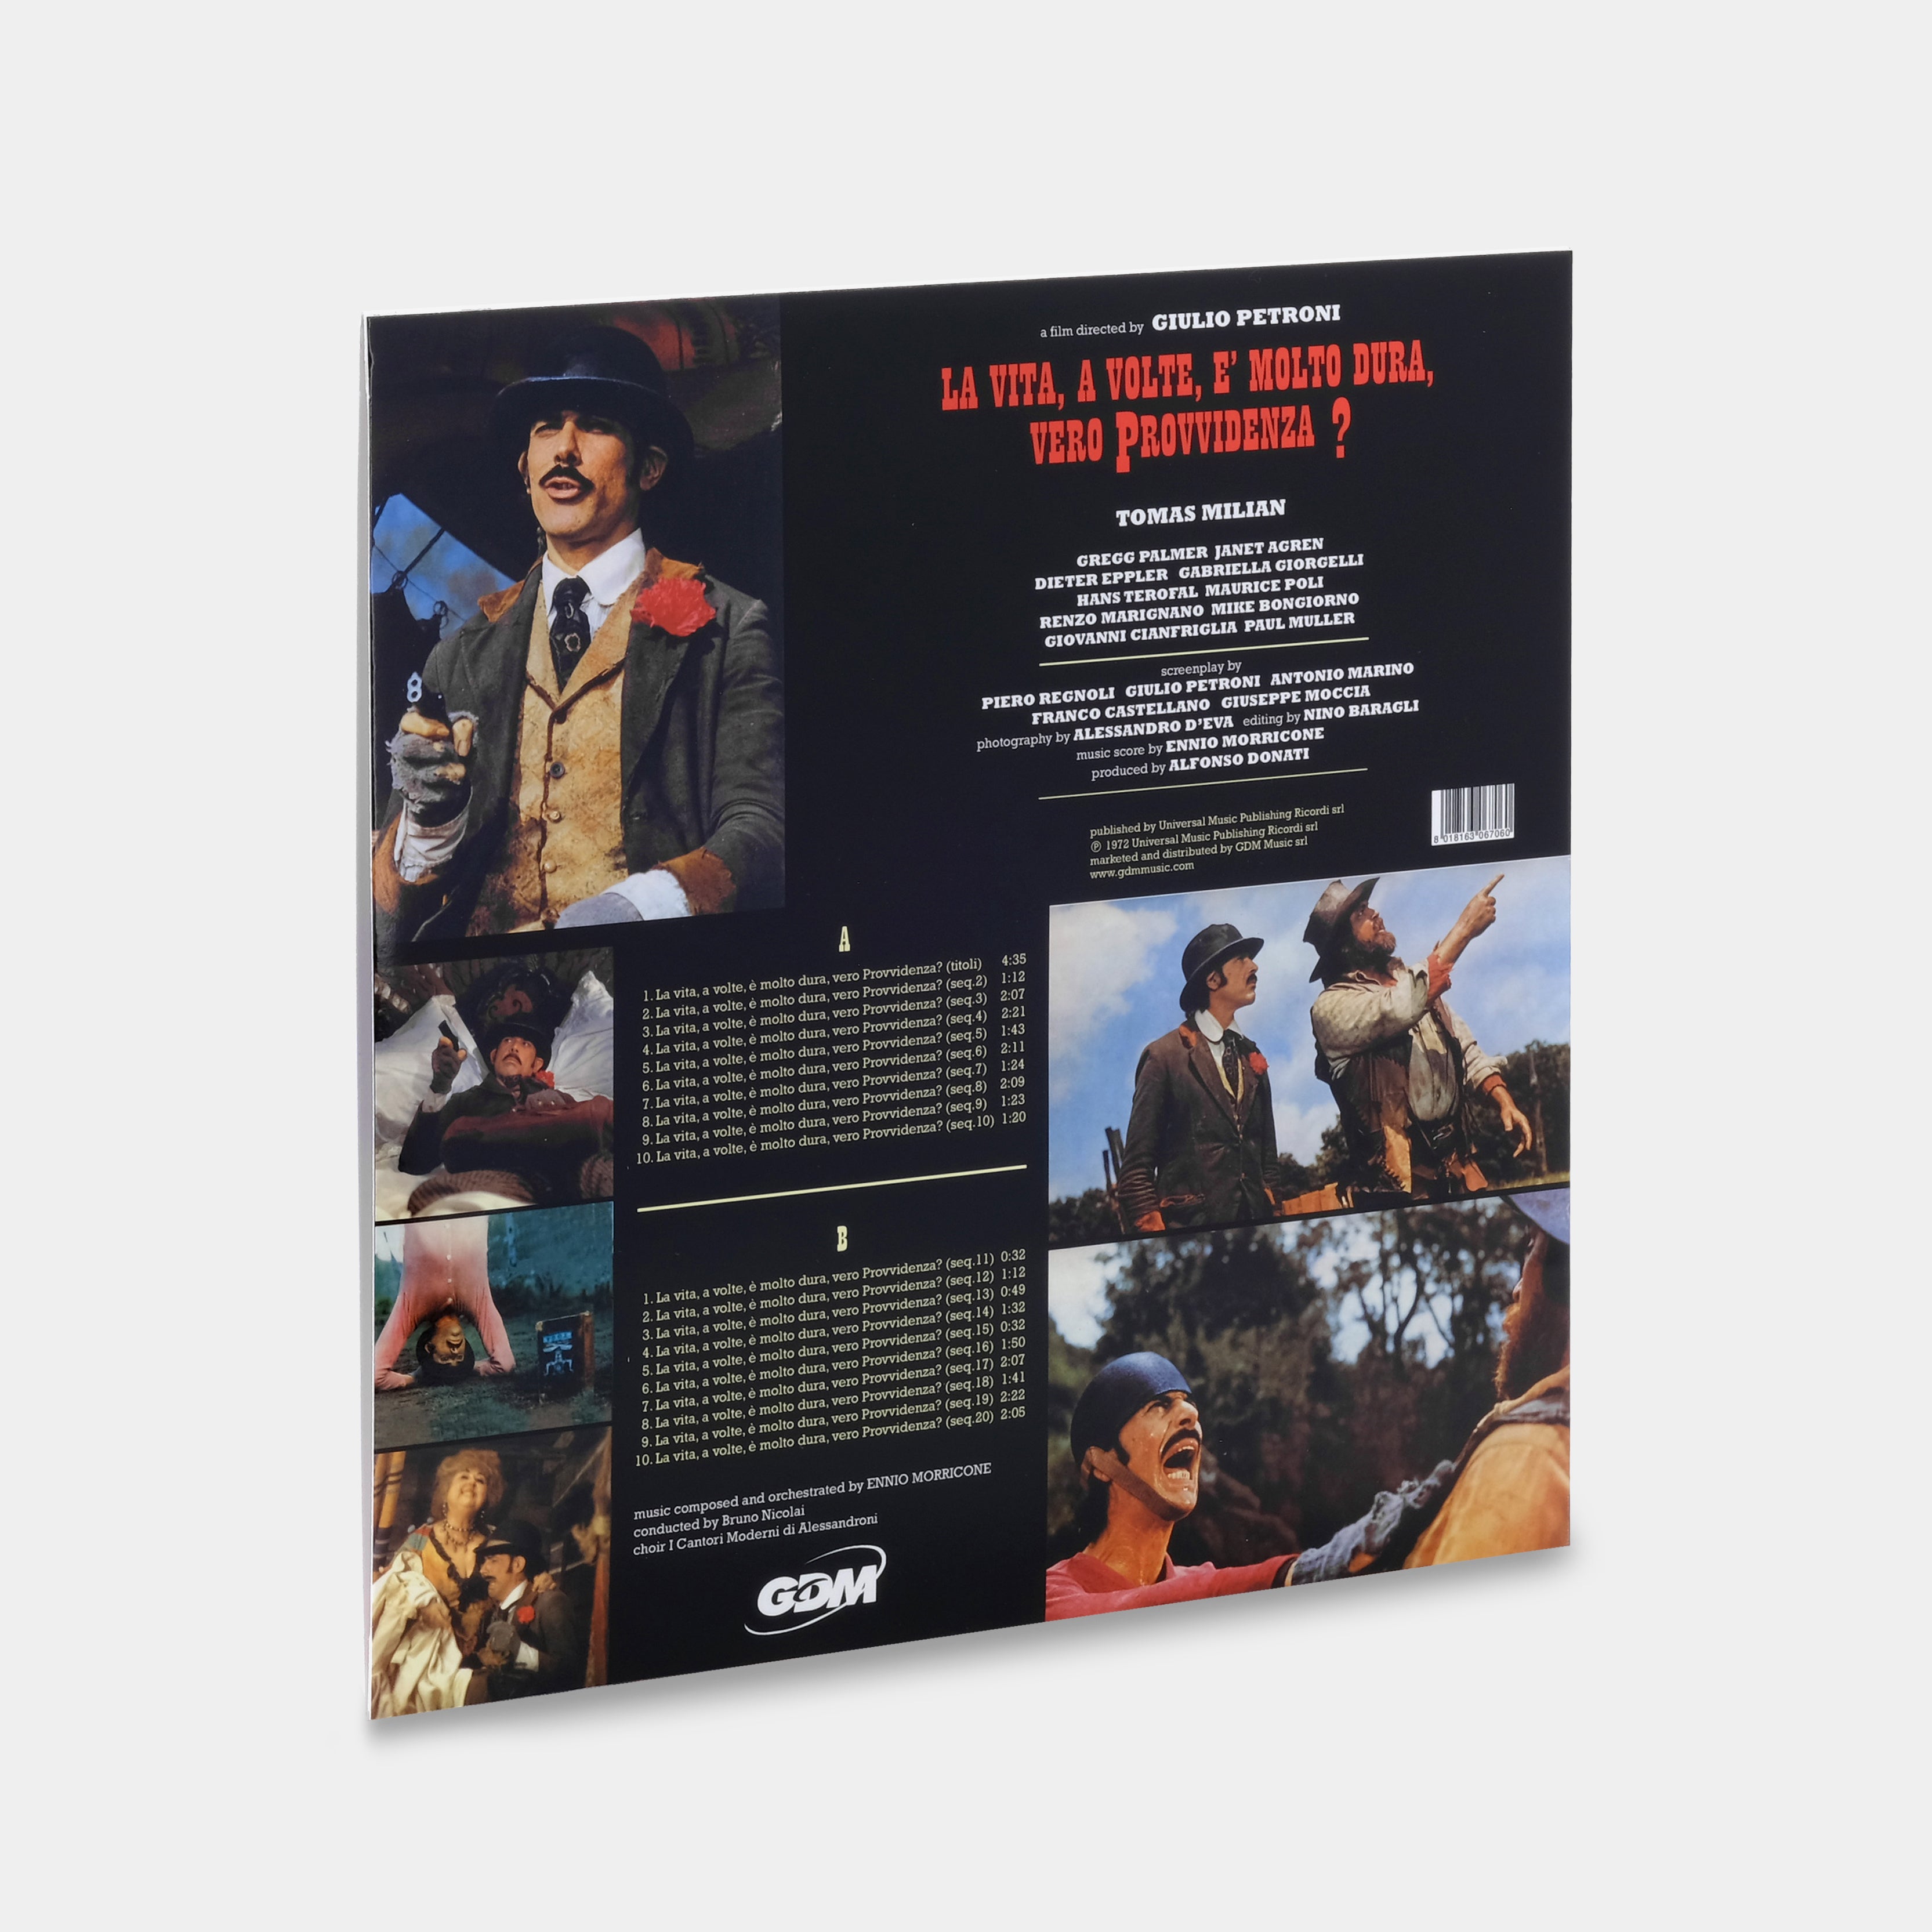 Ennio Morricone - La Vita, A Volte, E' Molto Dura, Vero Provvidenza? (Original Motion Picture Soundtrack) LP Blue Vinyl Record